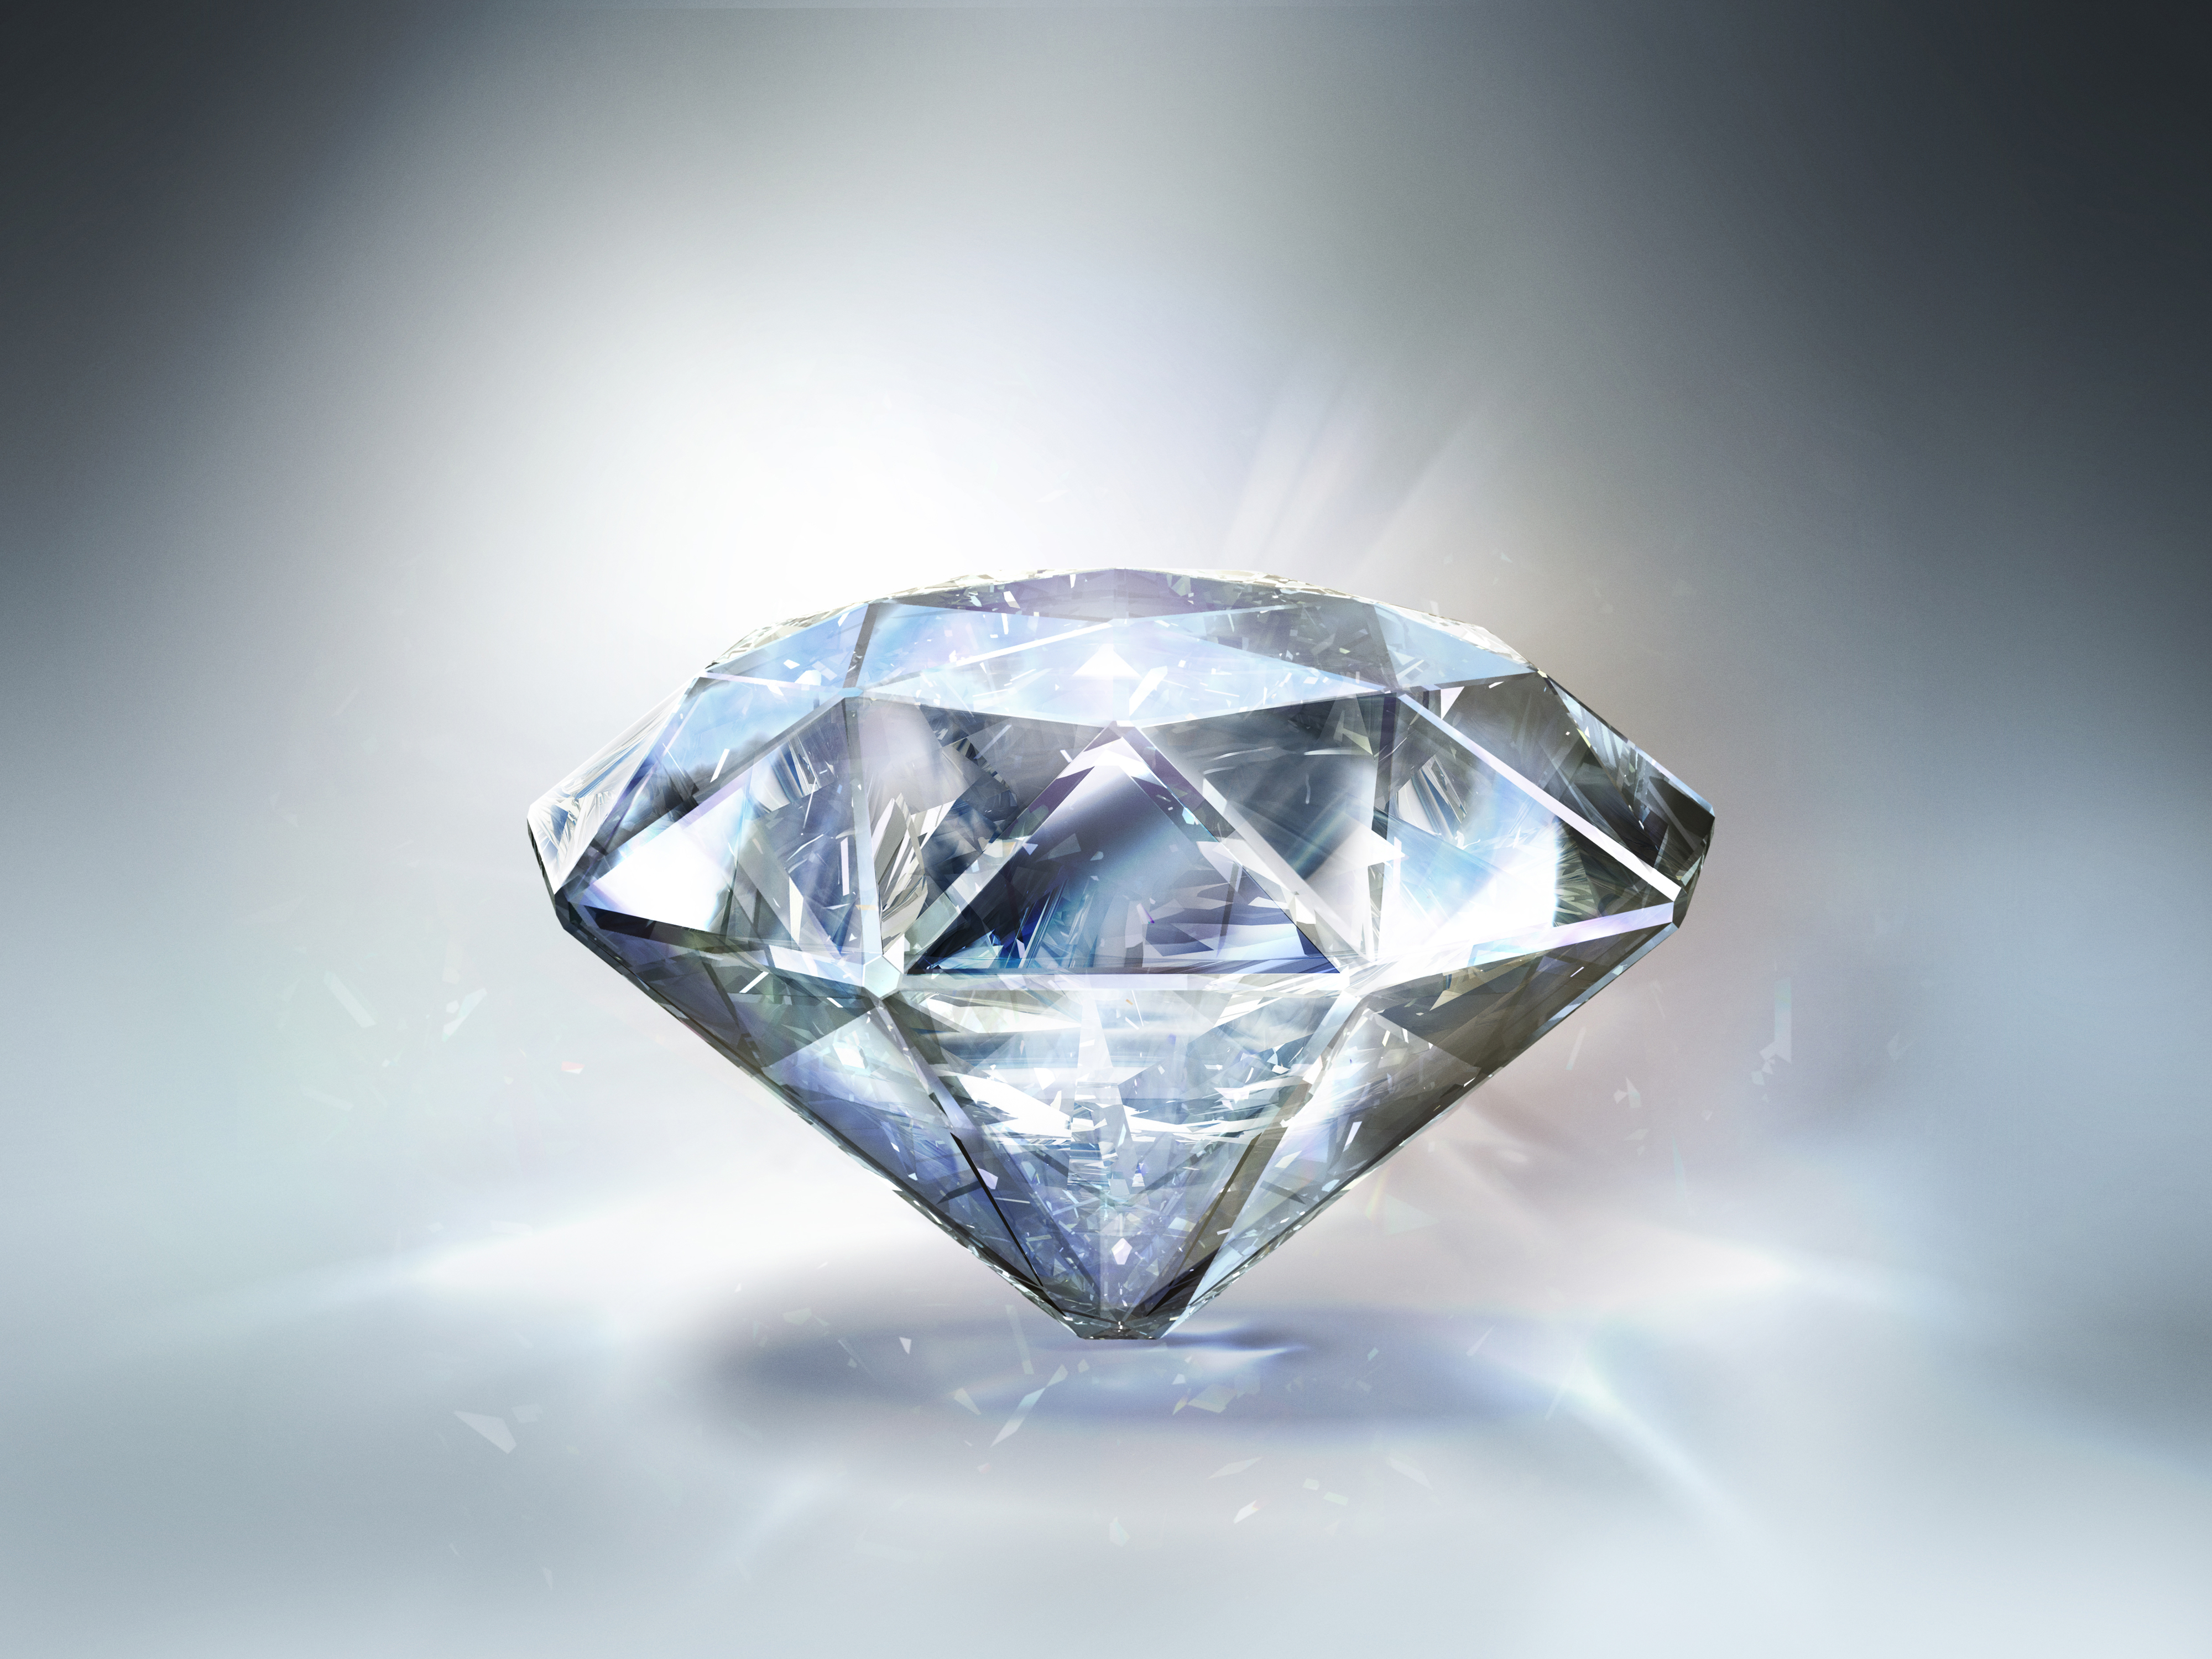 Closeup of a diamond